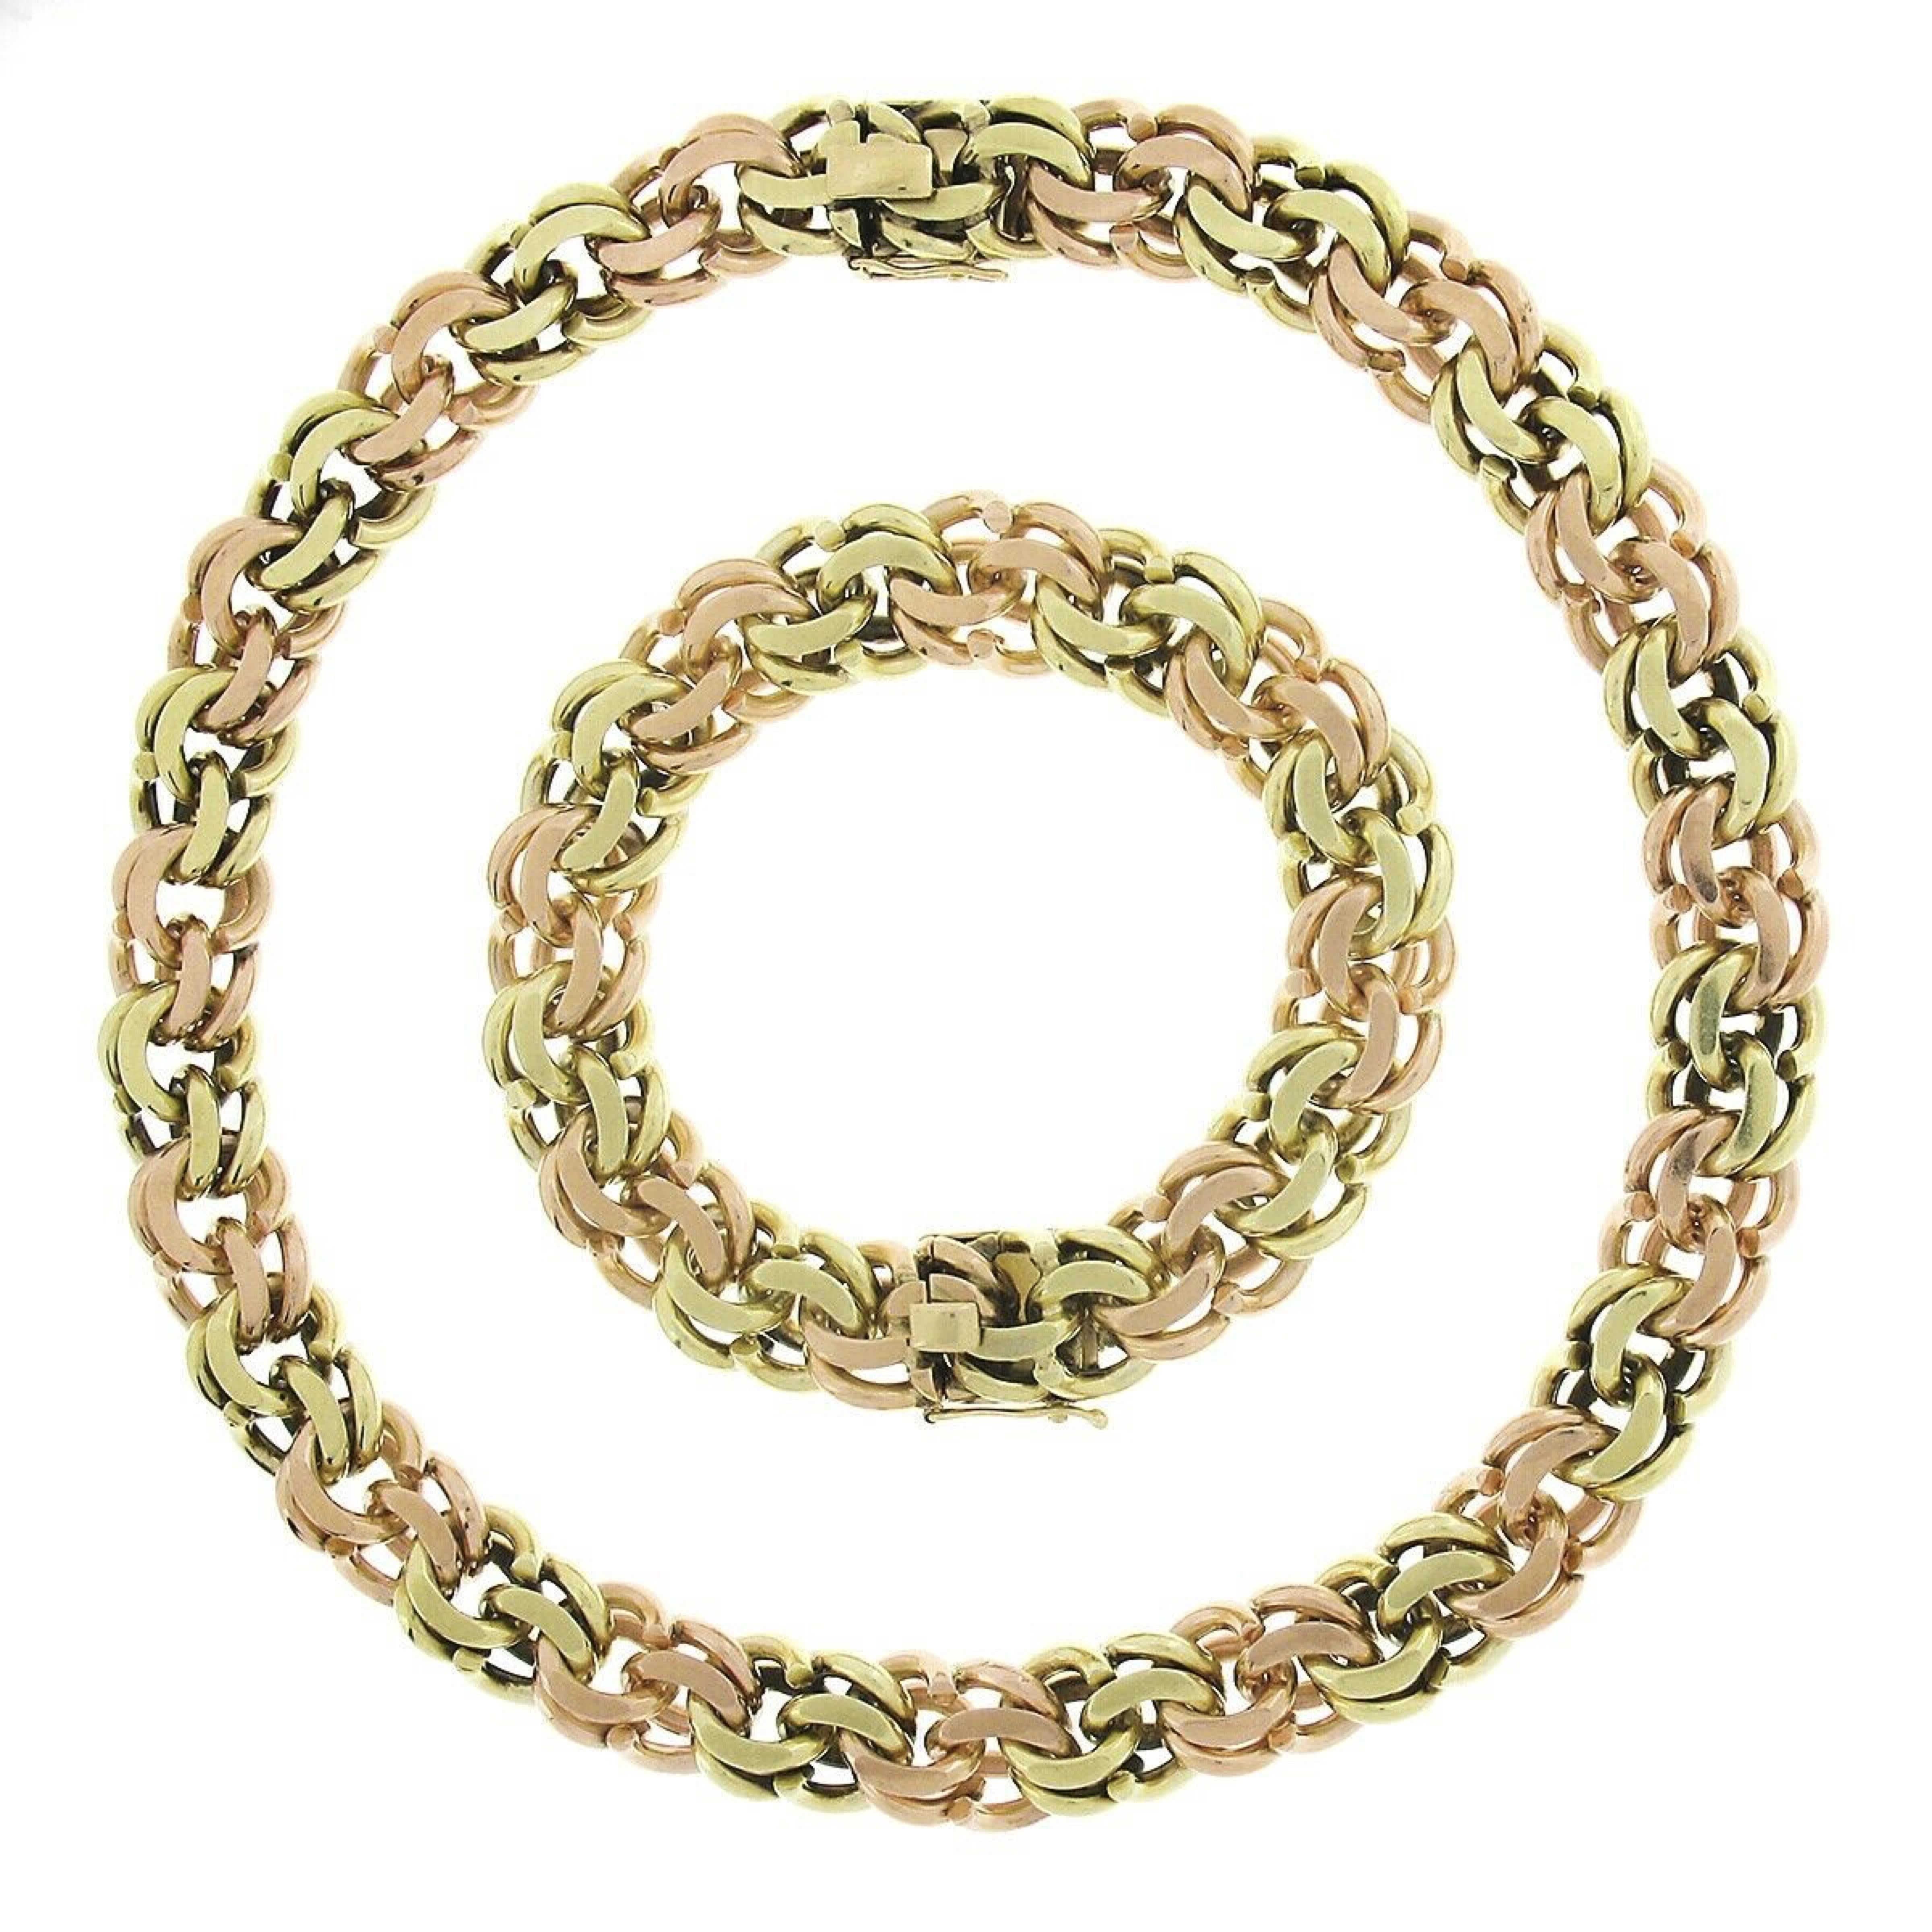 Cette magnifique parure de colliers et de bracelets assortis vintage de Cartier est réalisée en or vert et rose 14k massif. Le bracelet et le collier, lourds et substantiels, sont constitués de larges maillons doubles en or vert et en or rose